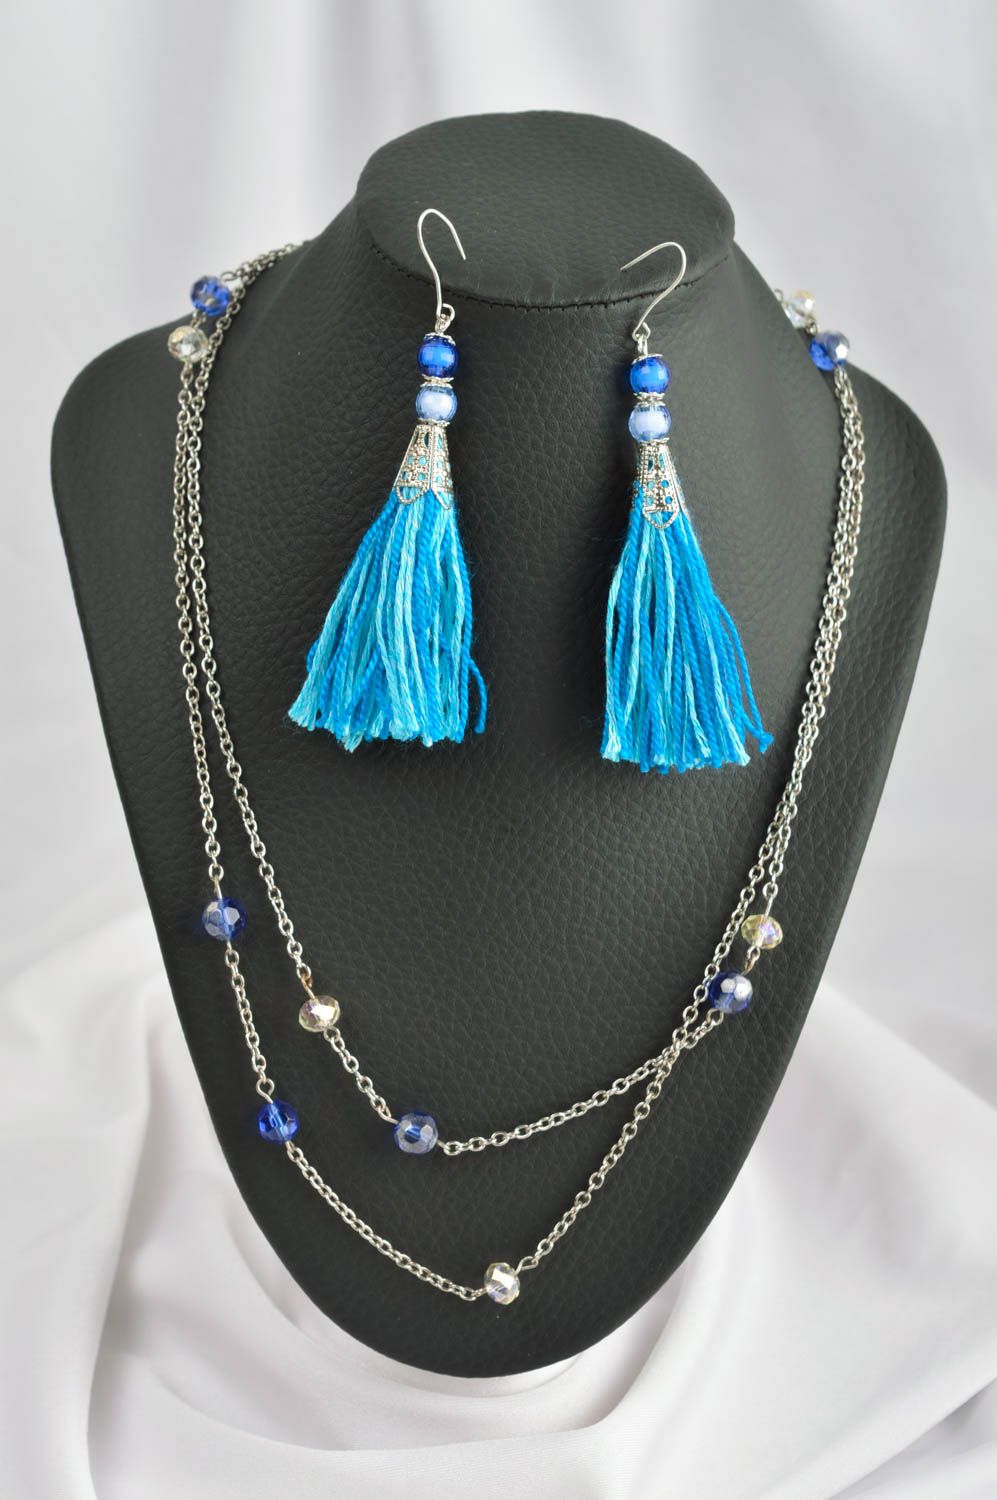 Украшение ручной работы ожерелье на шею длинные серьги голубые оригинальные фото 1